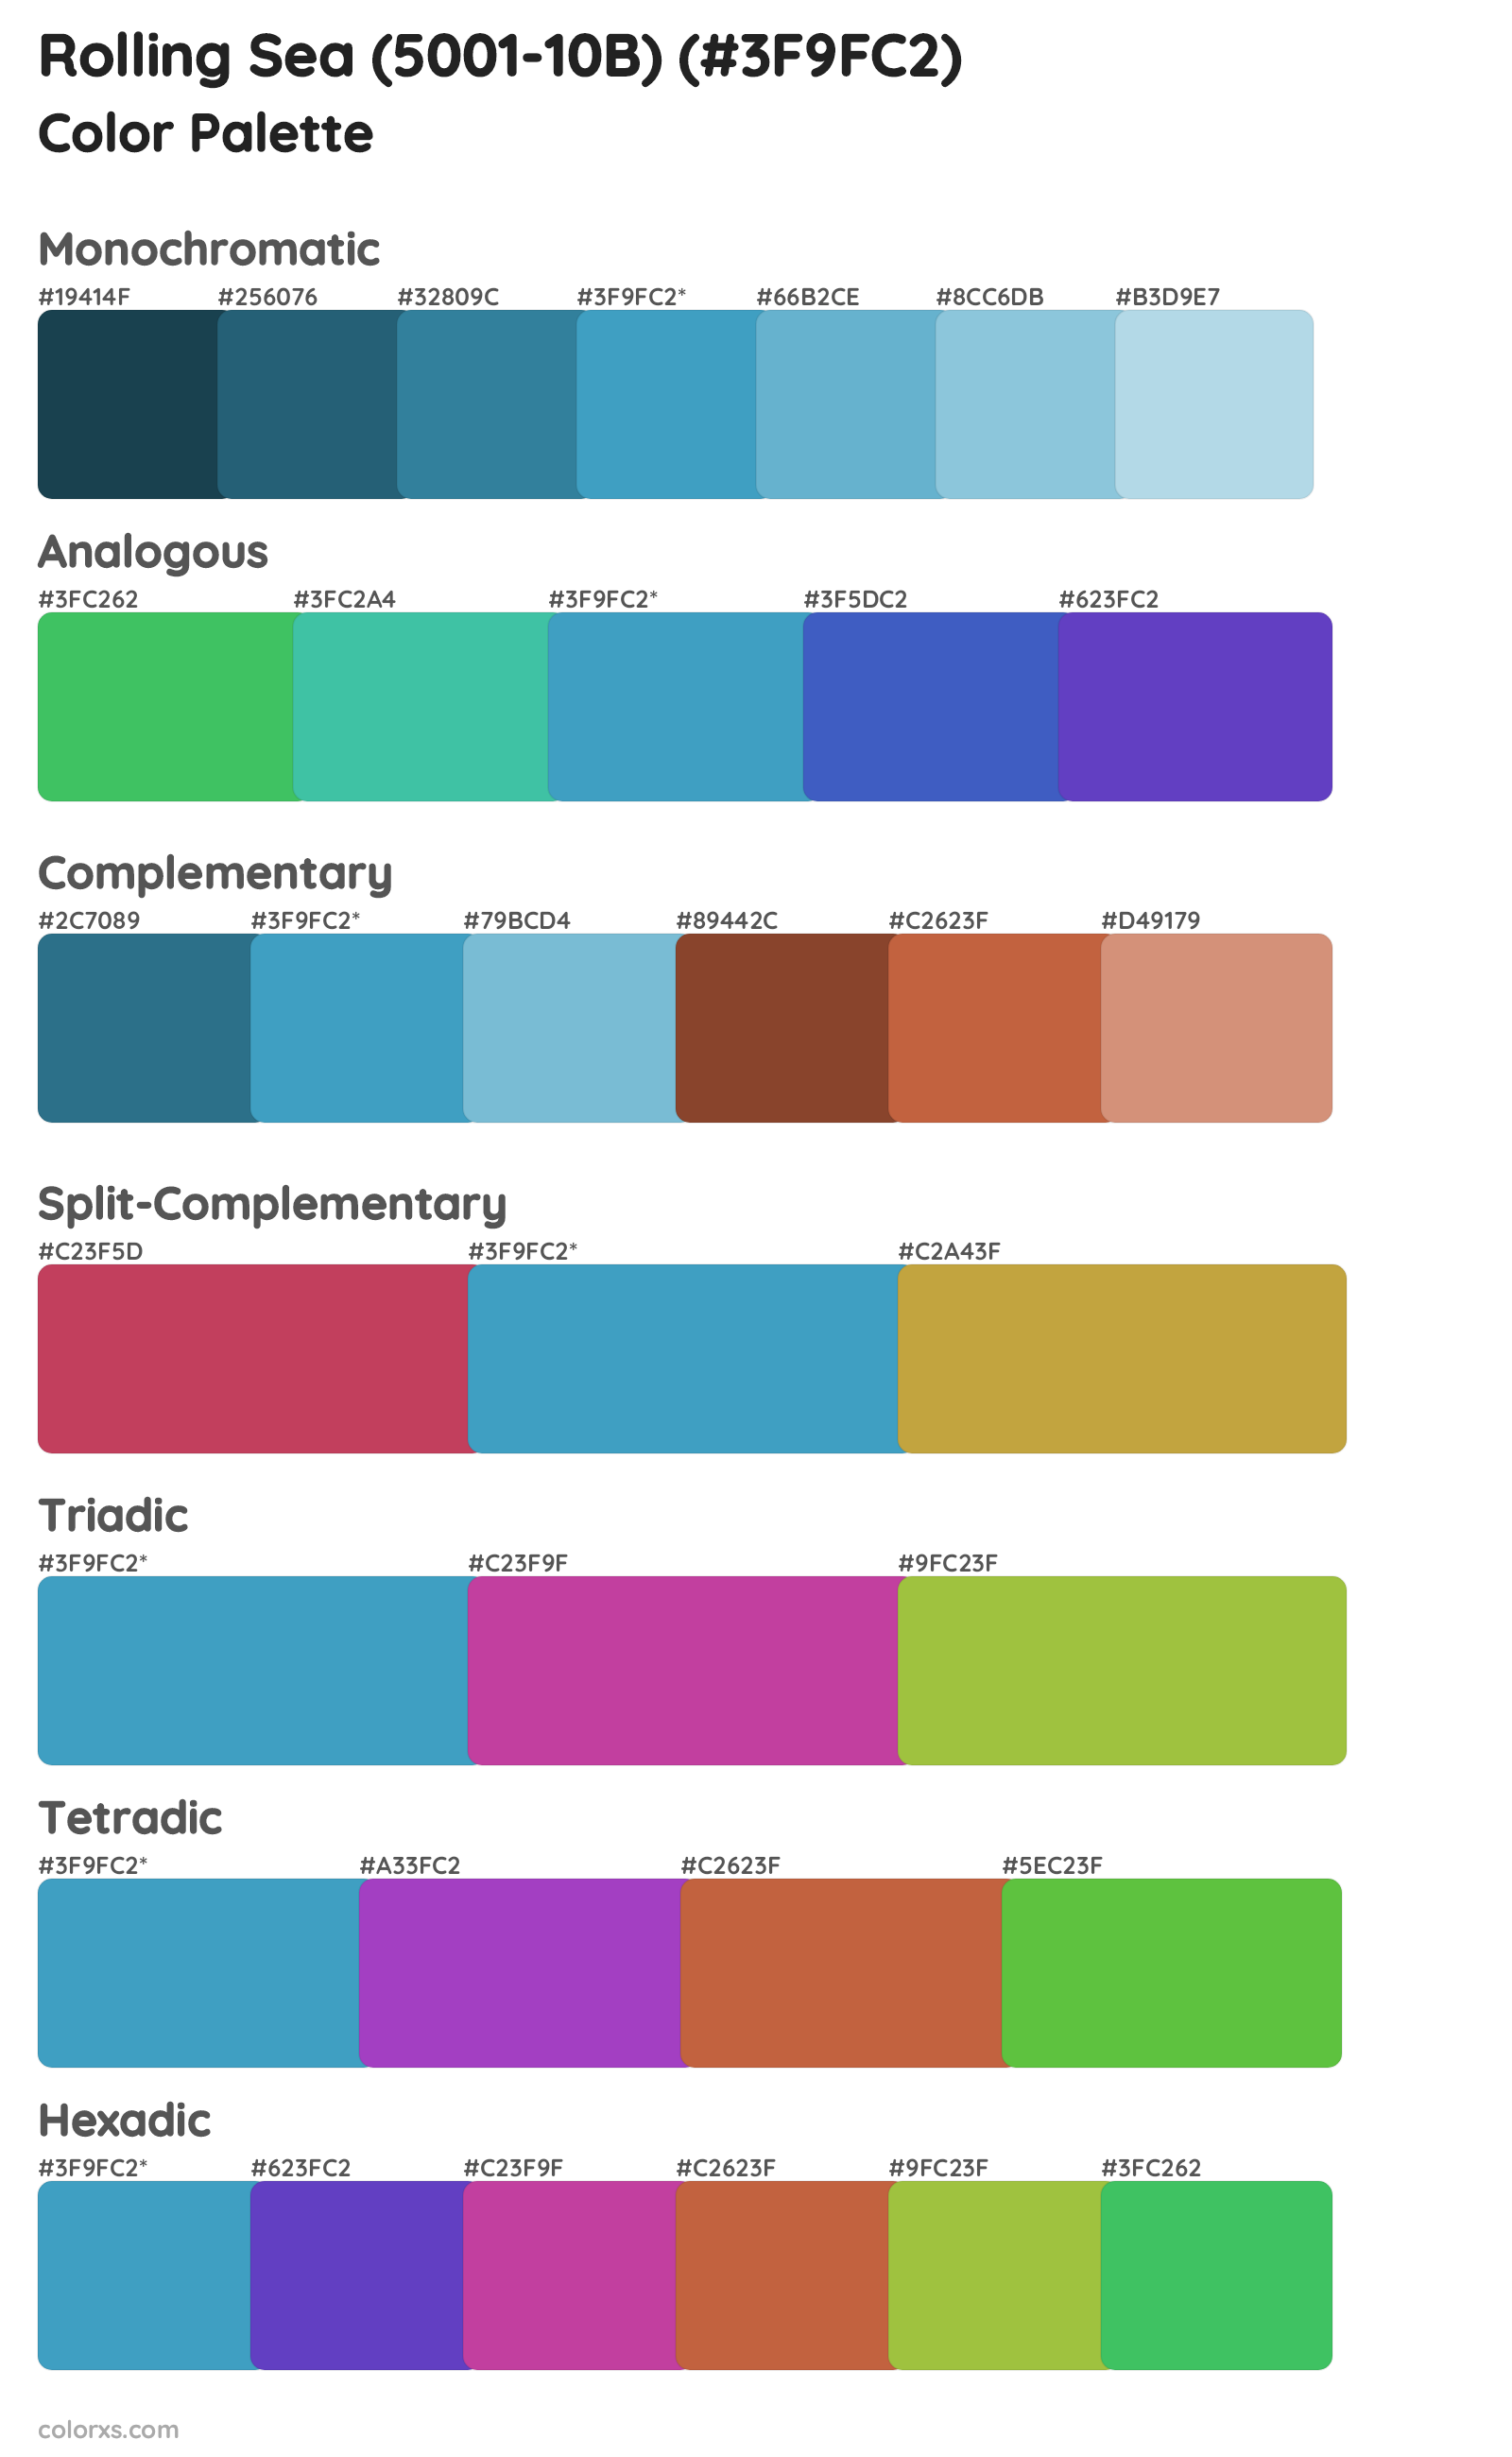 Rolling Sea (5001-10B) Color Scheme Palettes